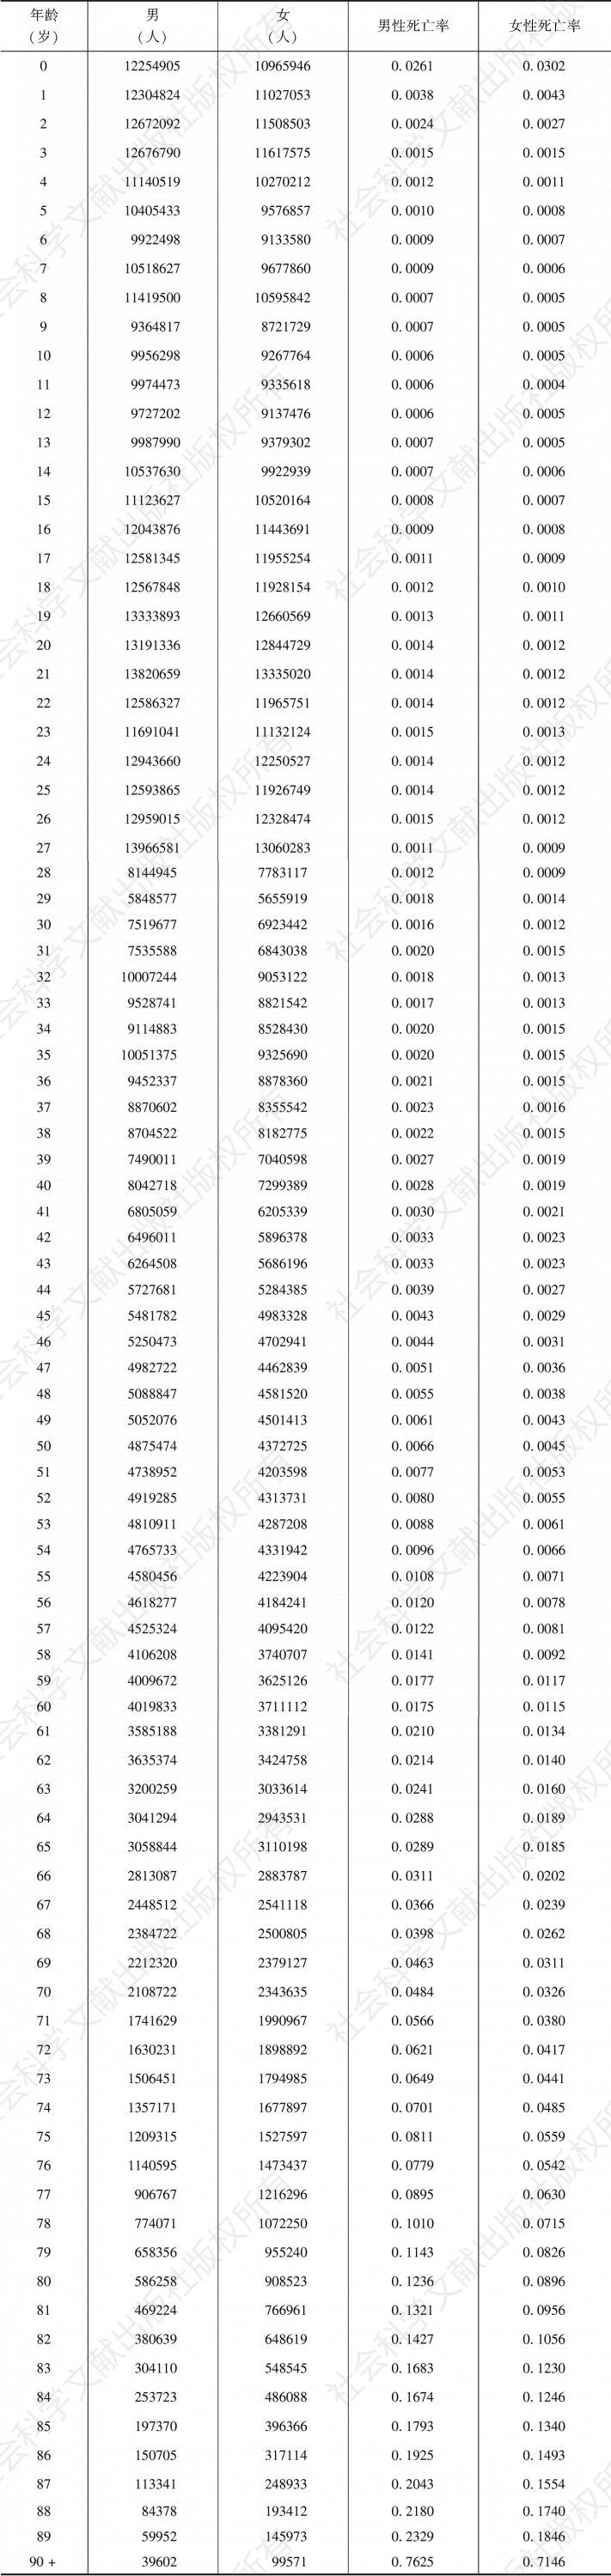 附表6-1 1990年中国人口年龄结构与年龄别死亡率